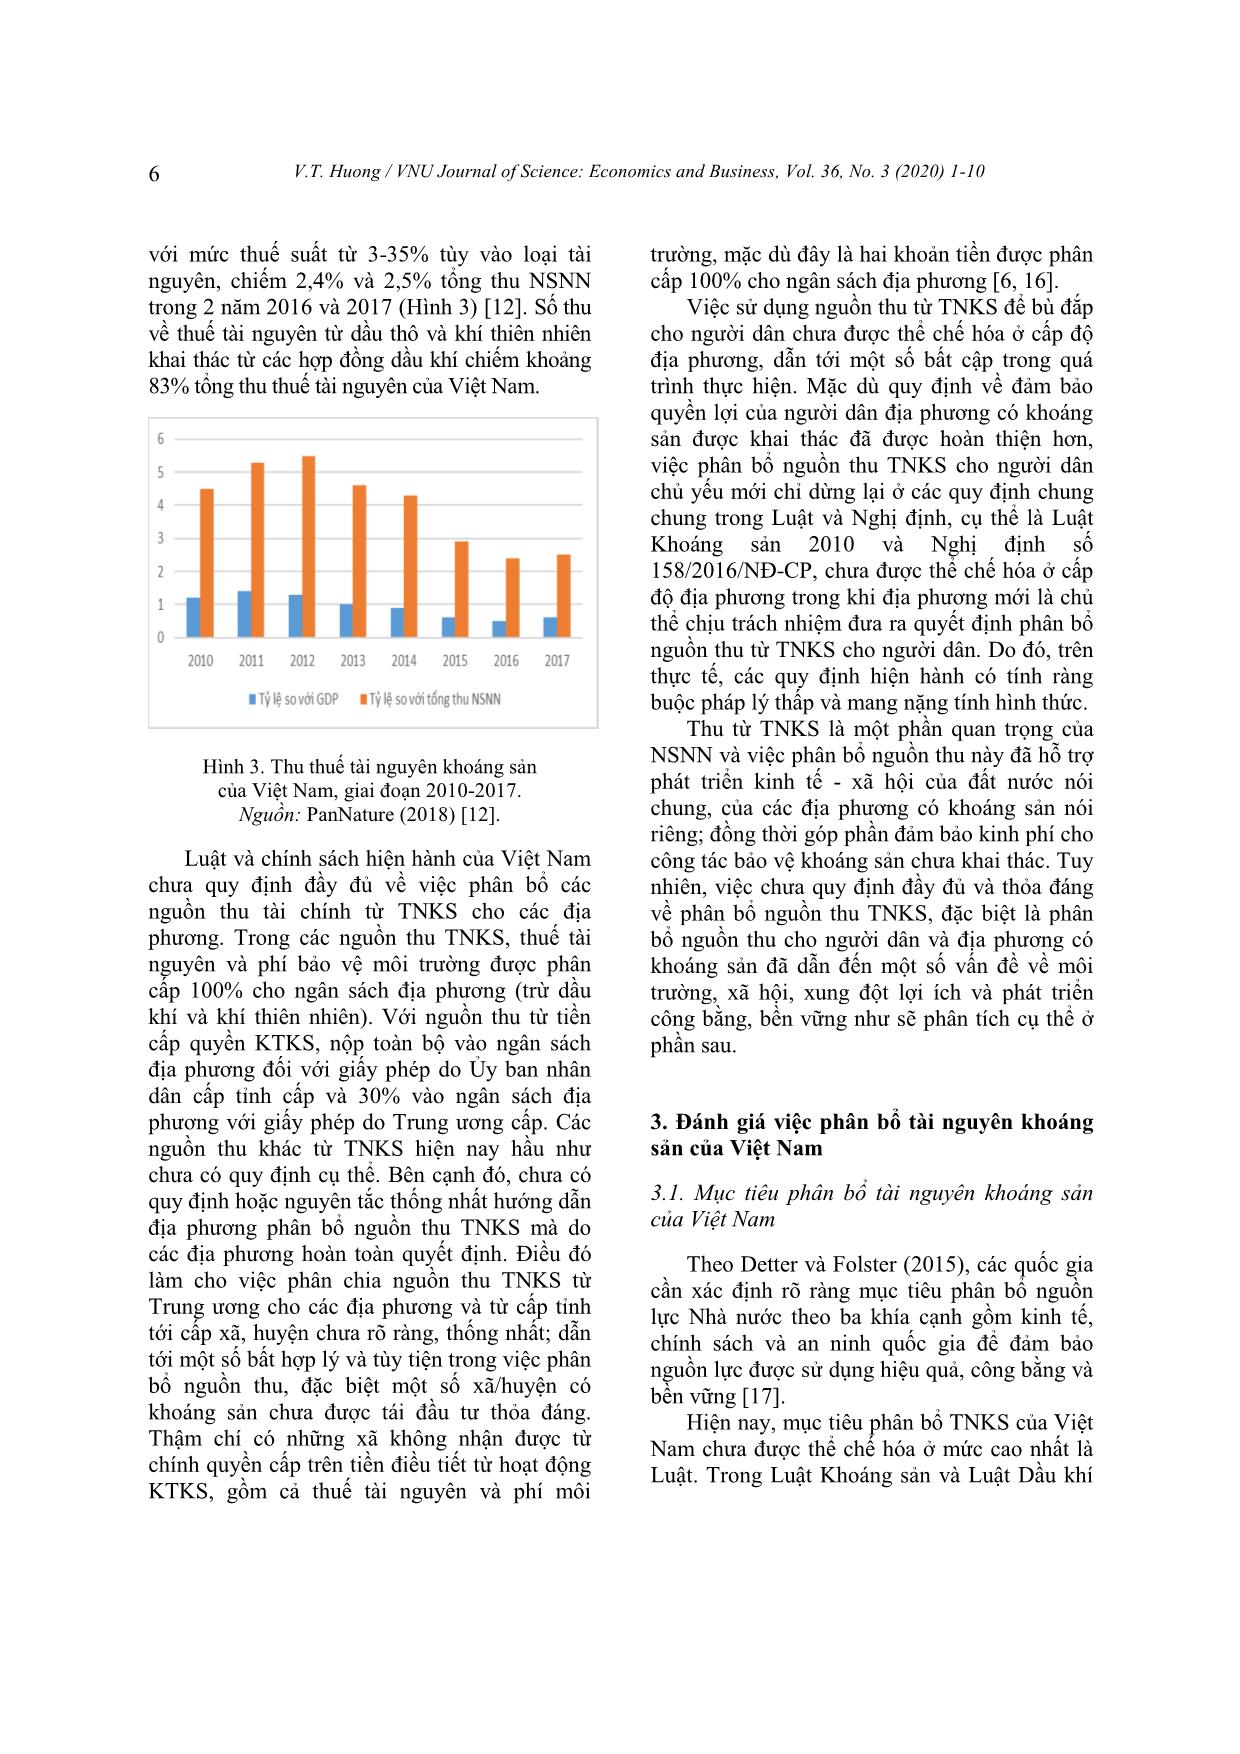 Đánh giá việc phân bổ tài nguyên khoáng sản Việt Nam theo khía cạnh kinh tế và chính sách trang 6